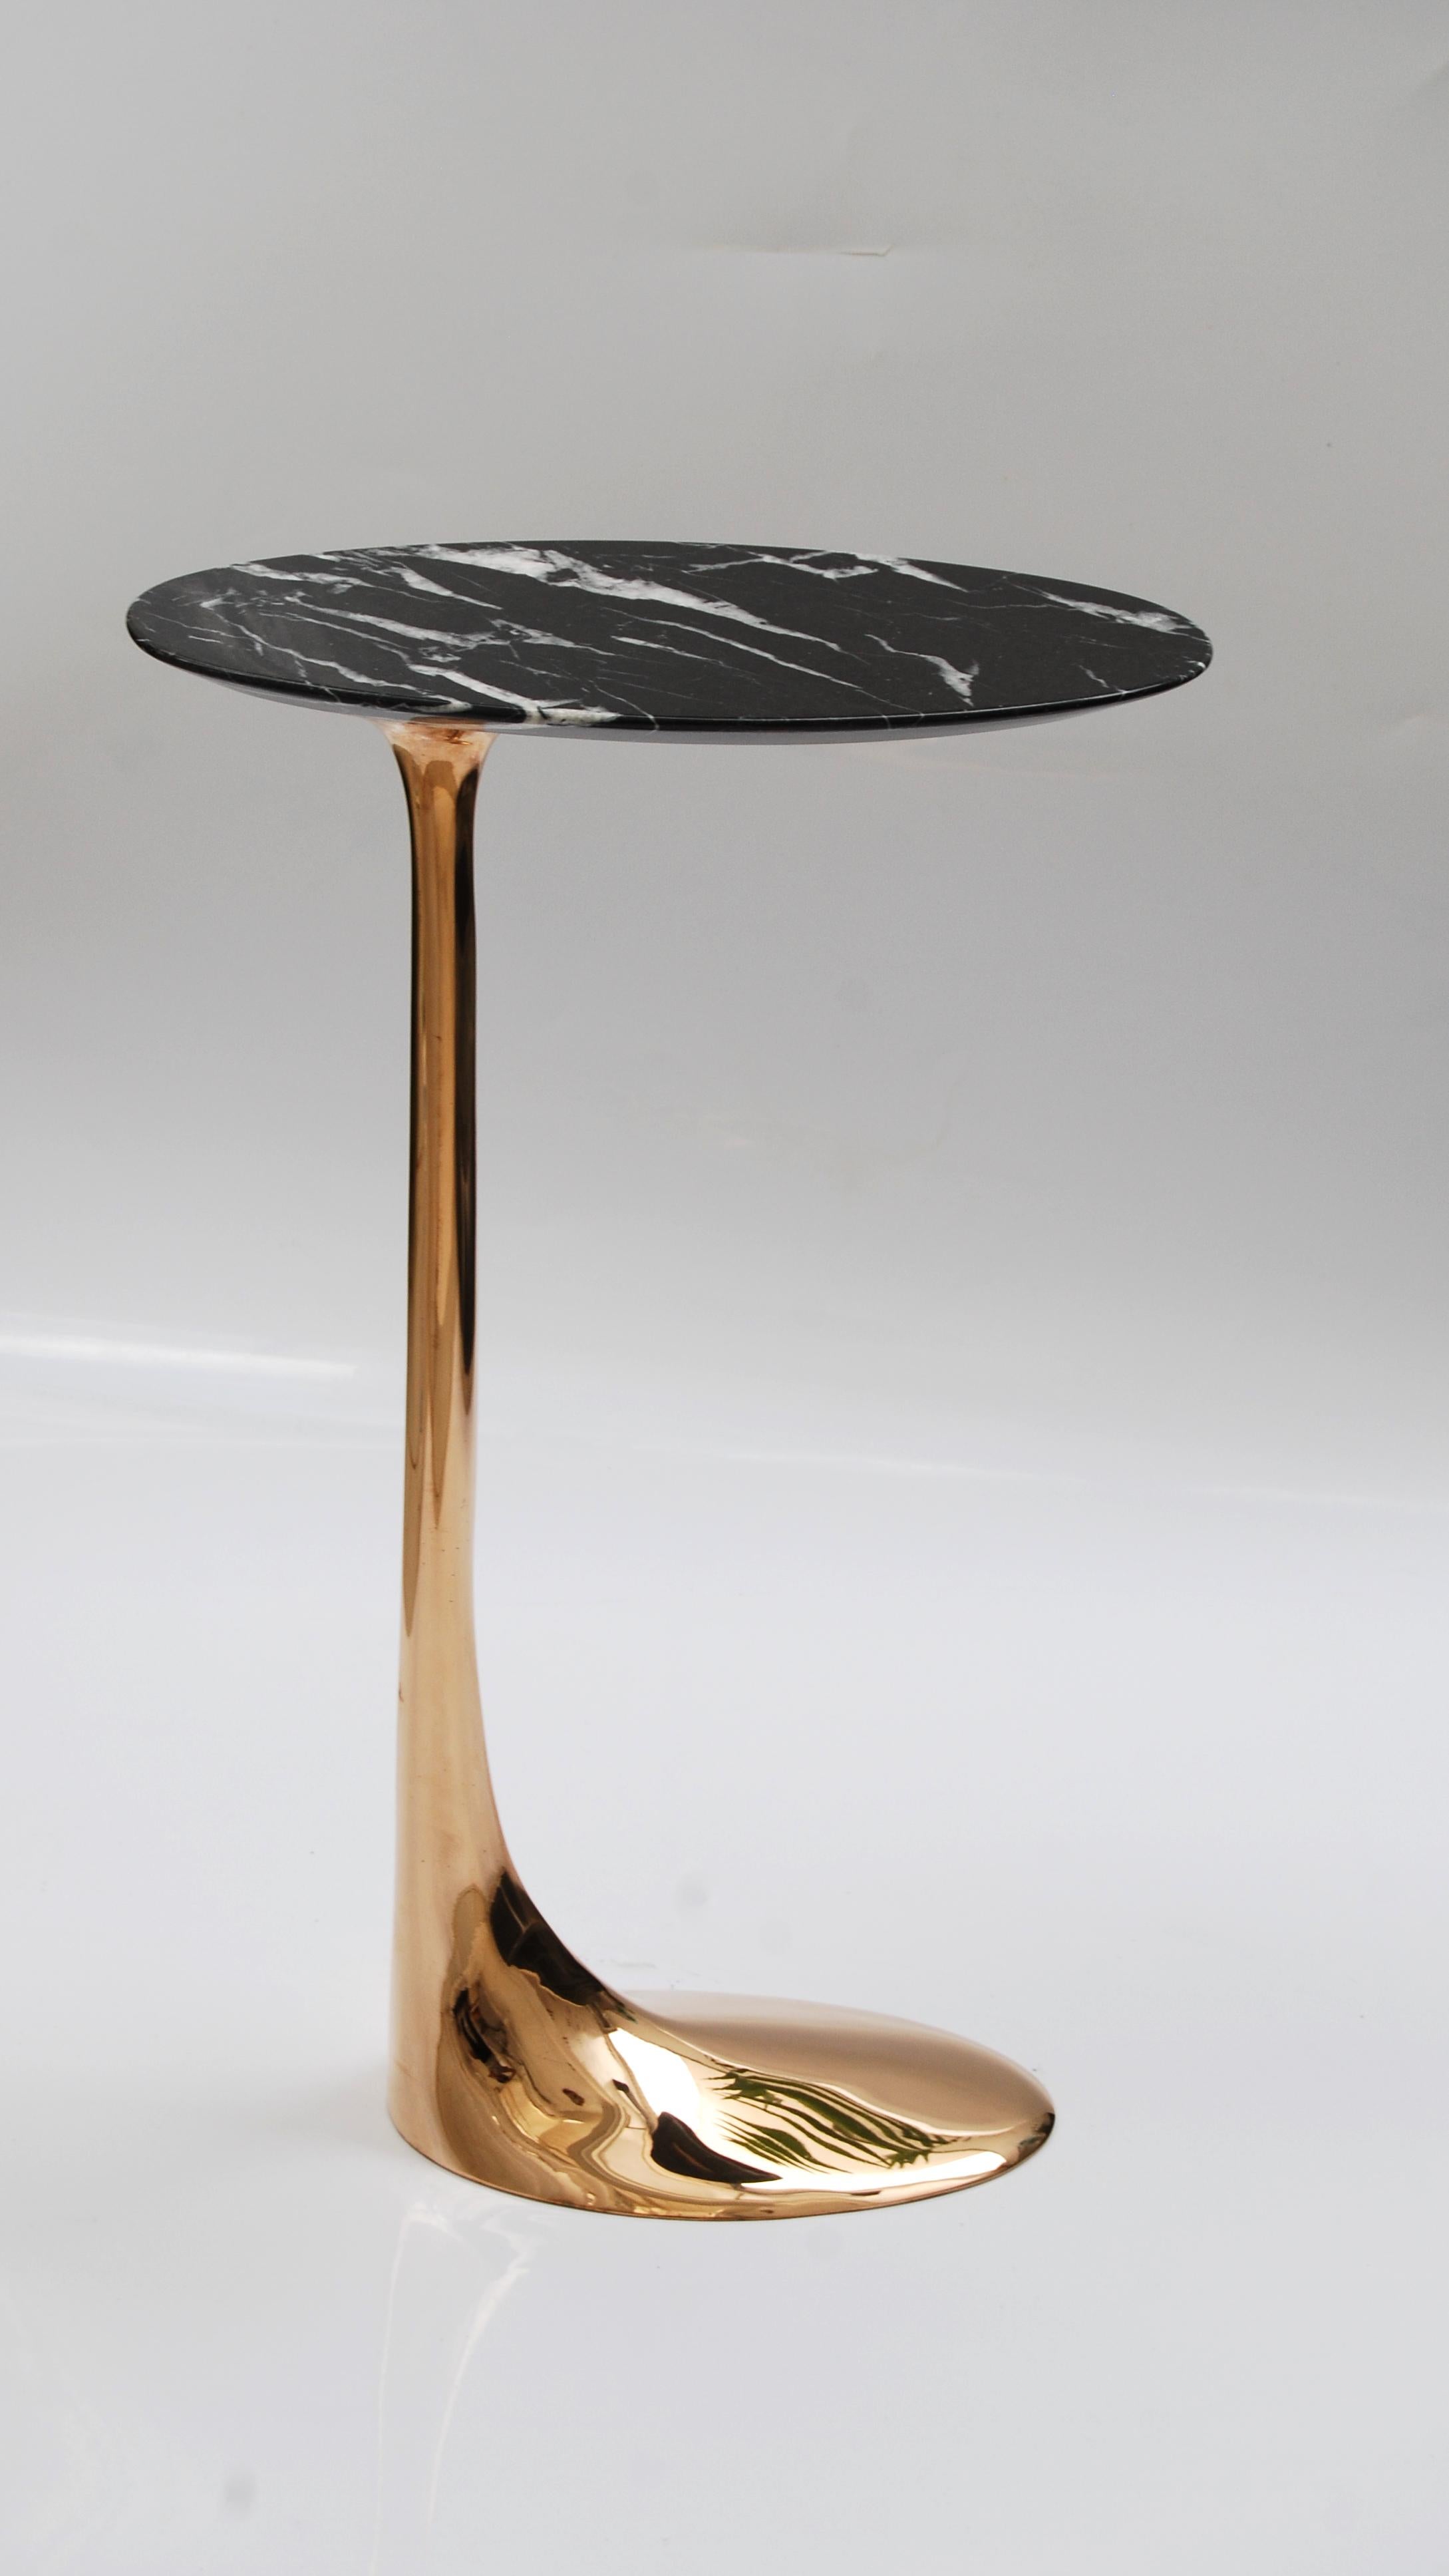 Tisch aus polierter Bronze mit Platte aus Marquina-Marmor von Fakasaka Design
Abmessungen: B 18 x T 38 x H 62 cm
MATERIALIEN: Polierte Bronze, Nero Marquina-Marmor.

